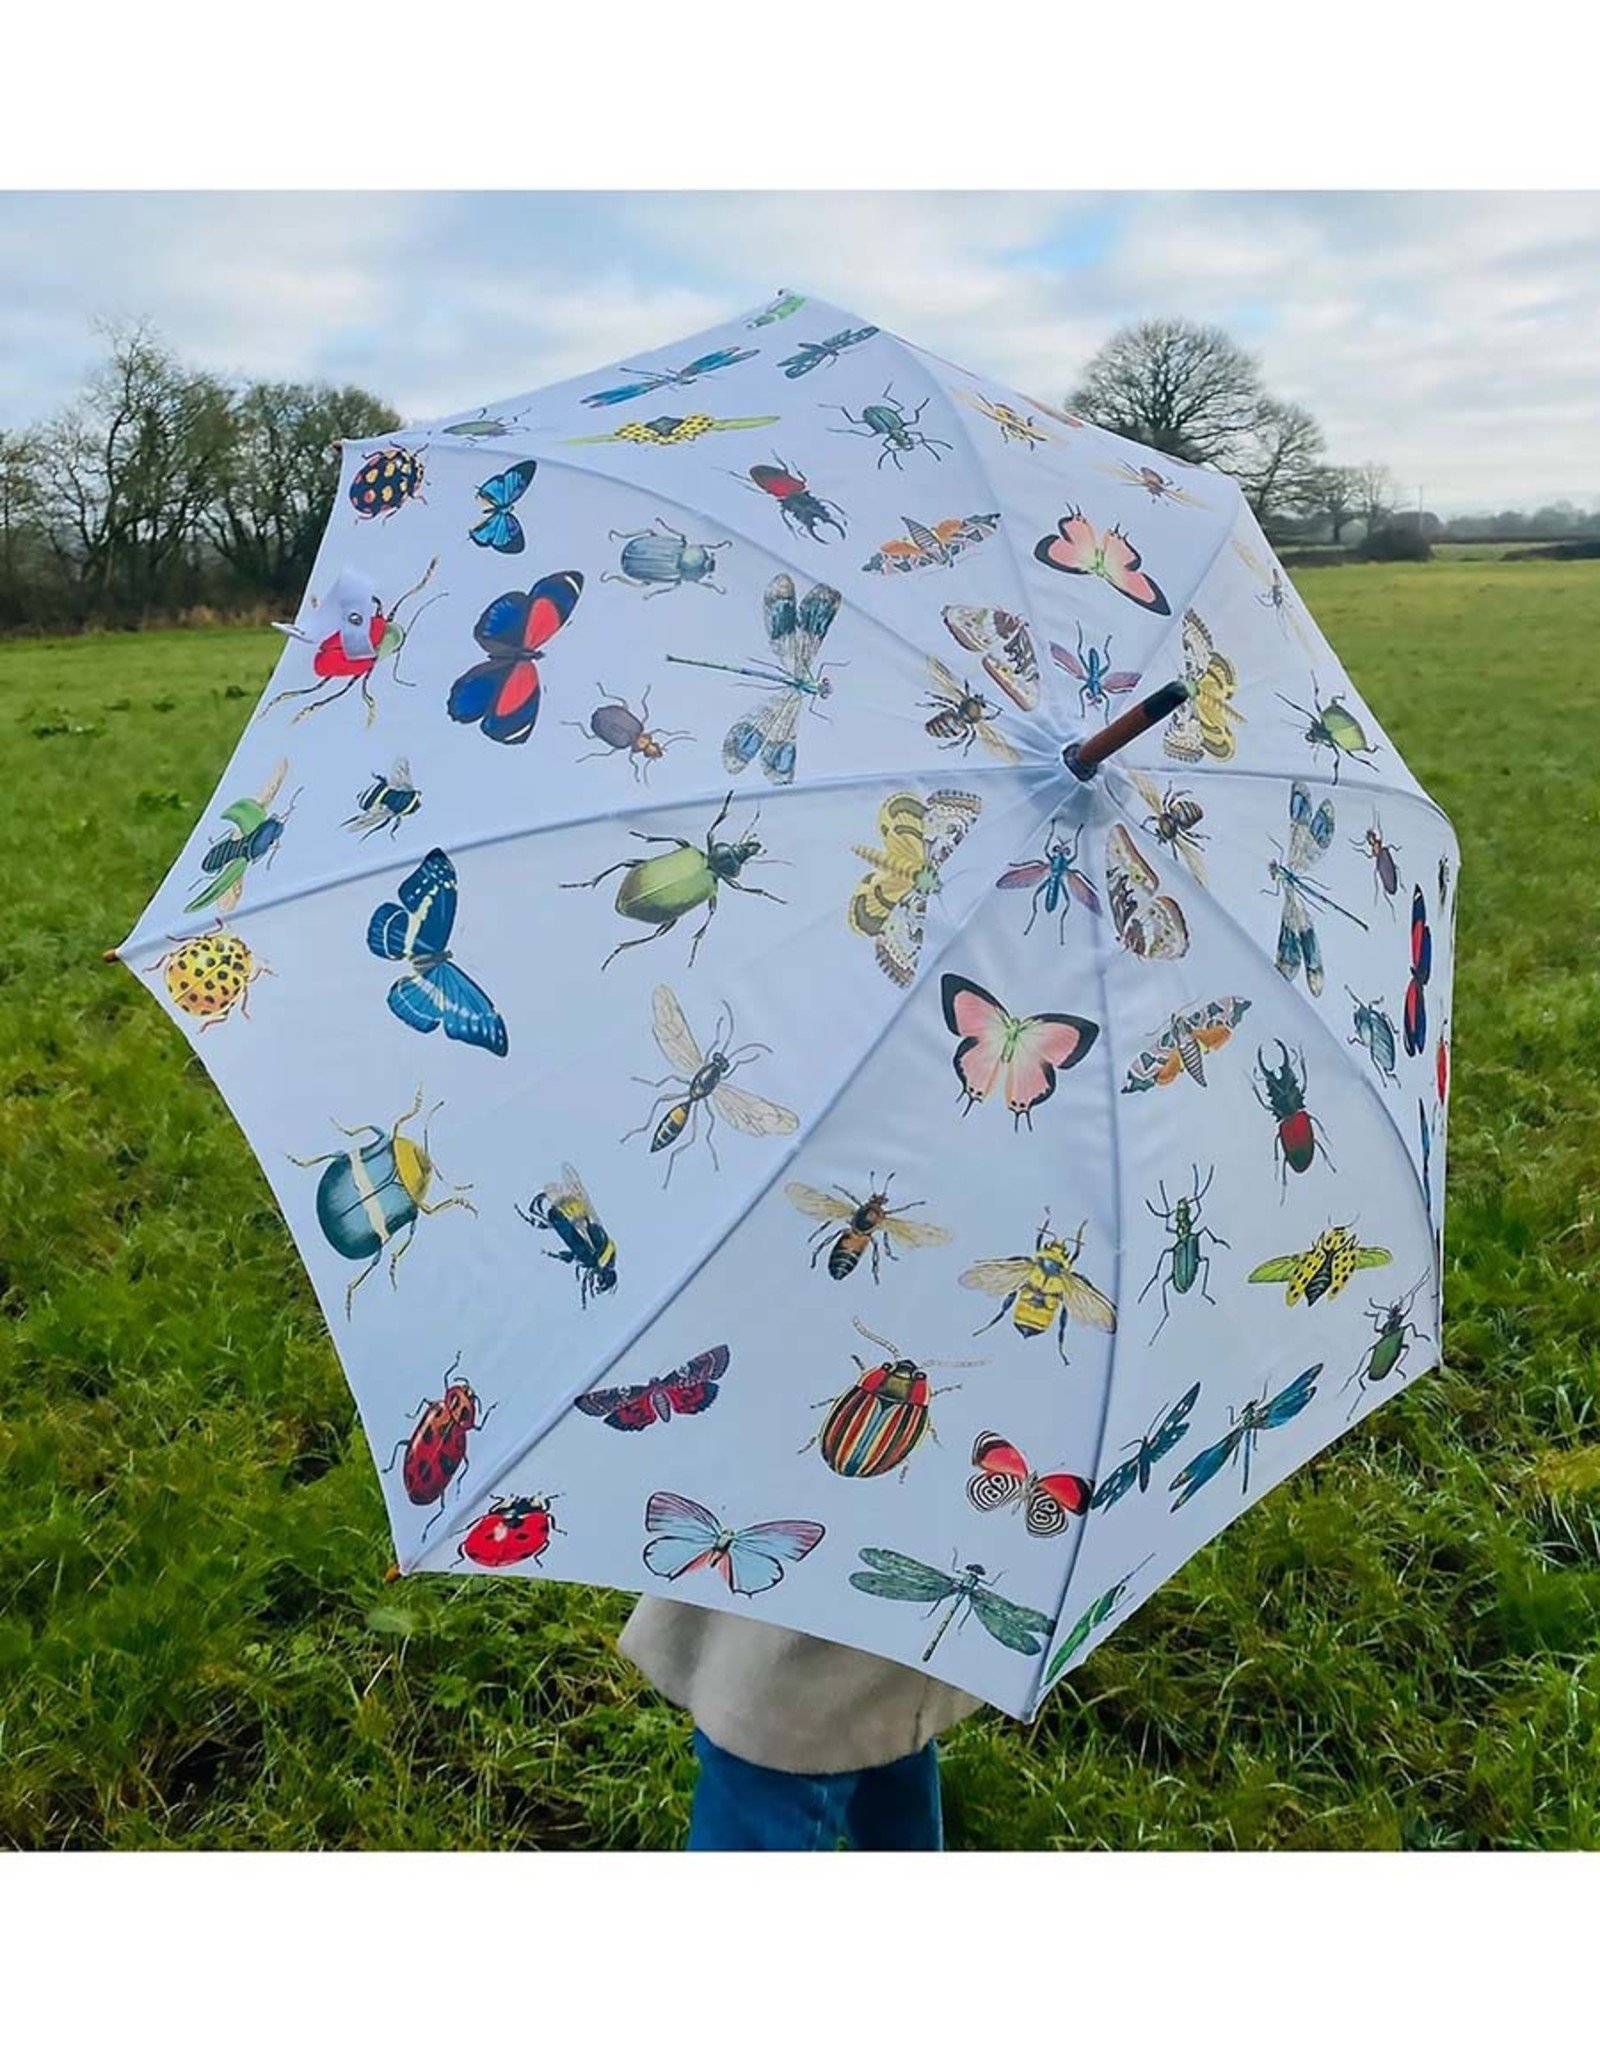 Bugs Umbrella